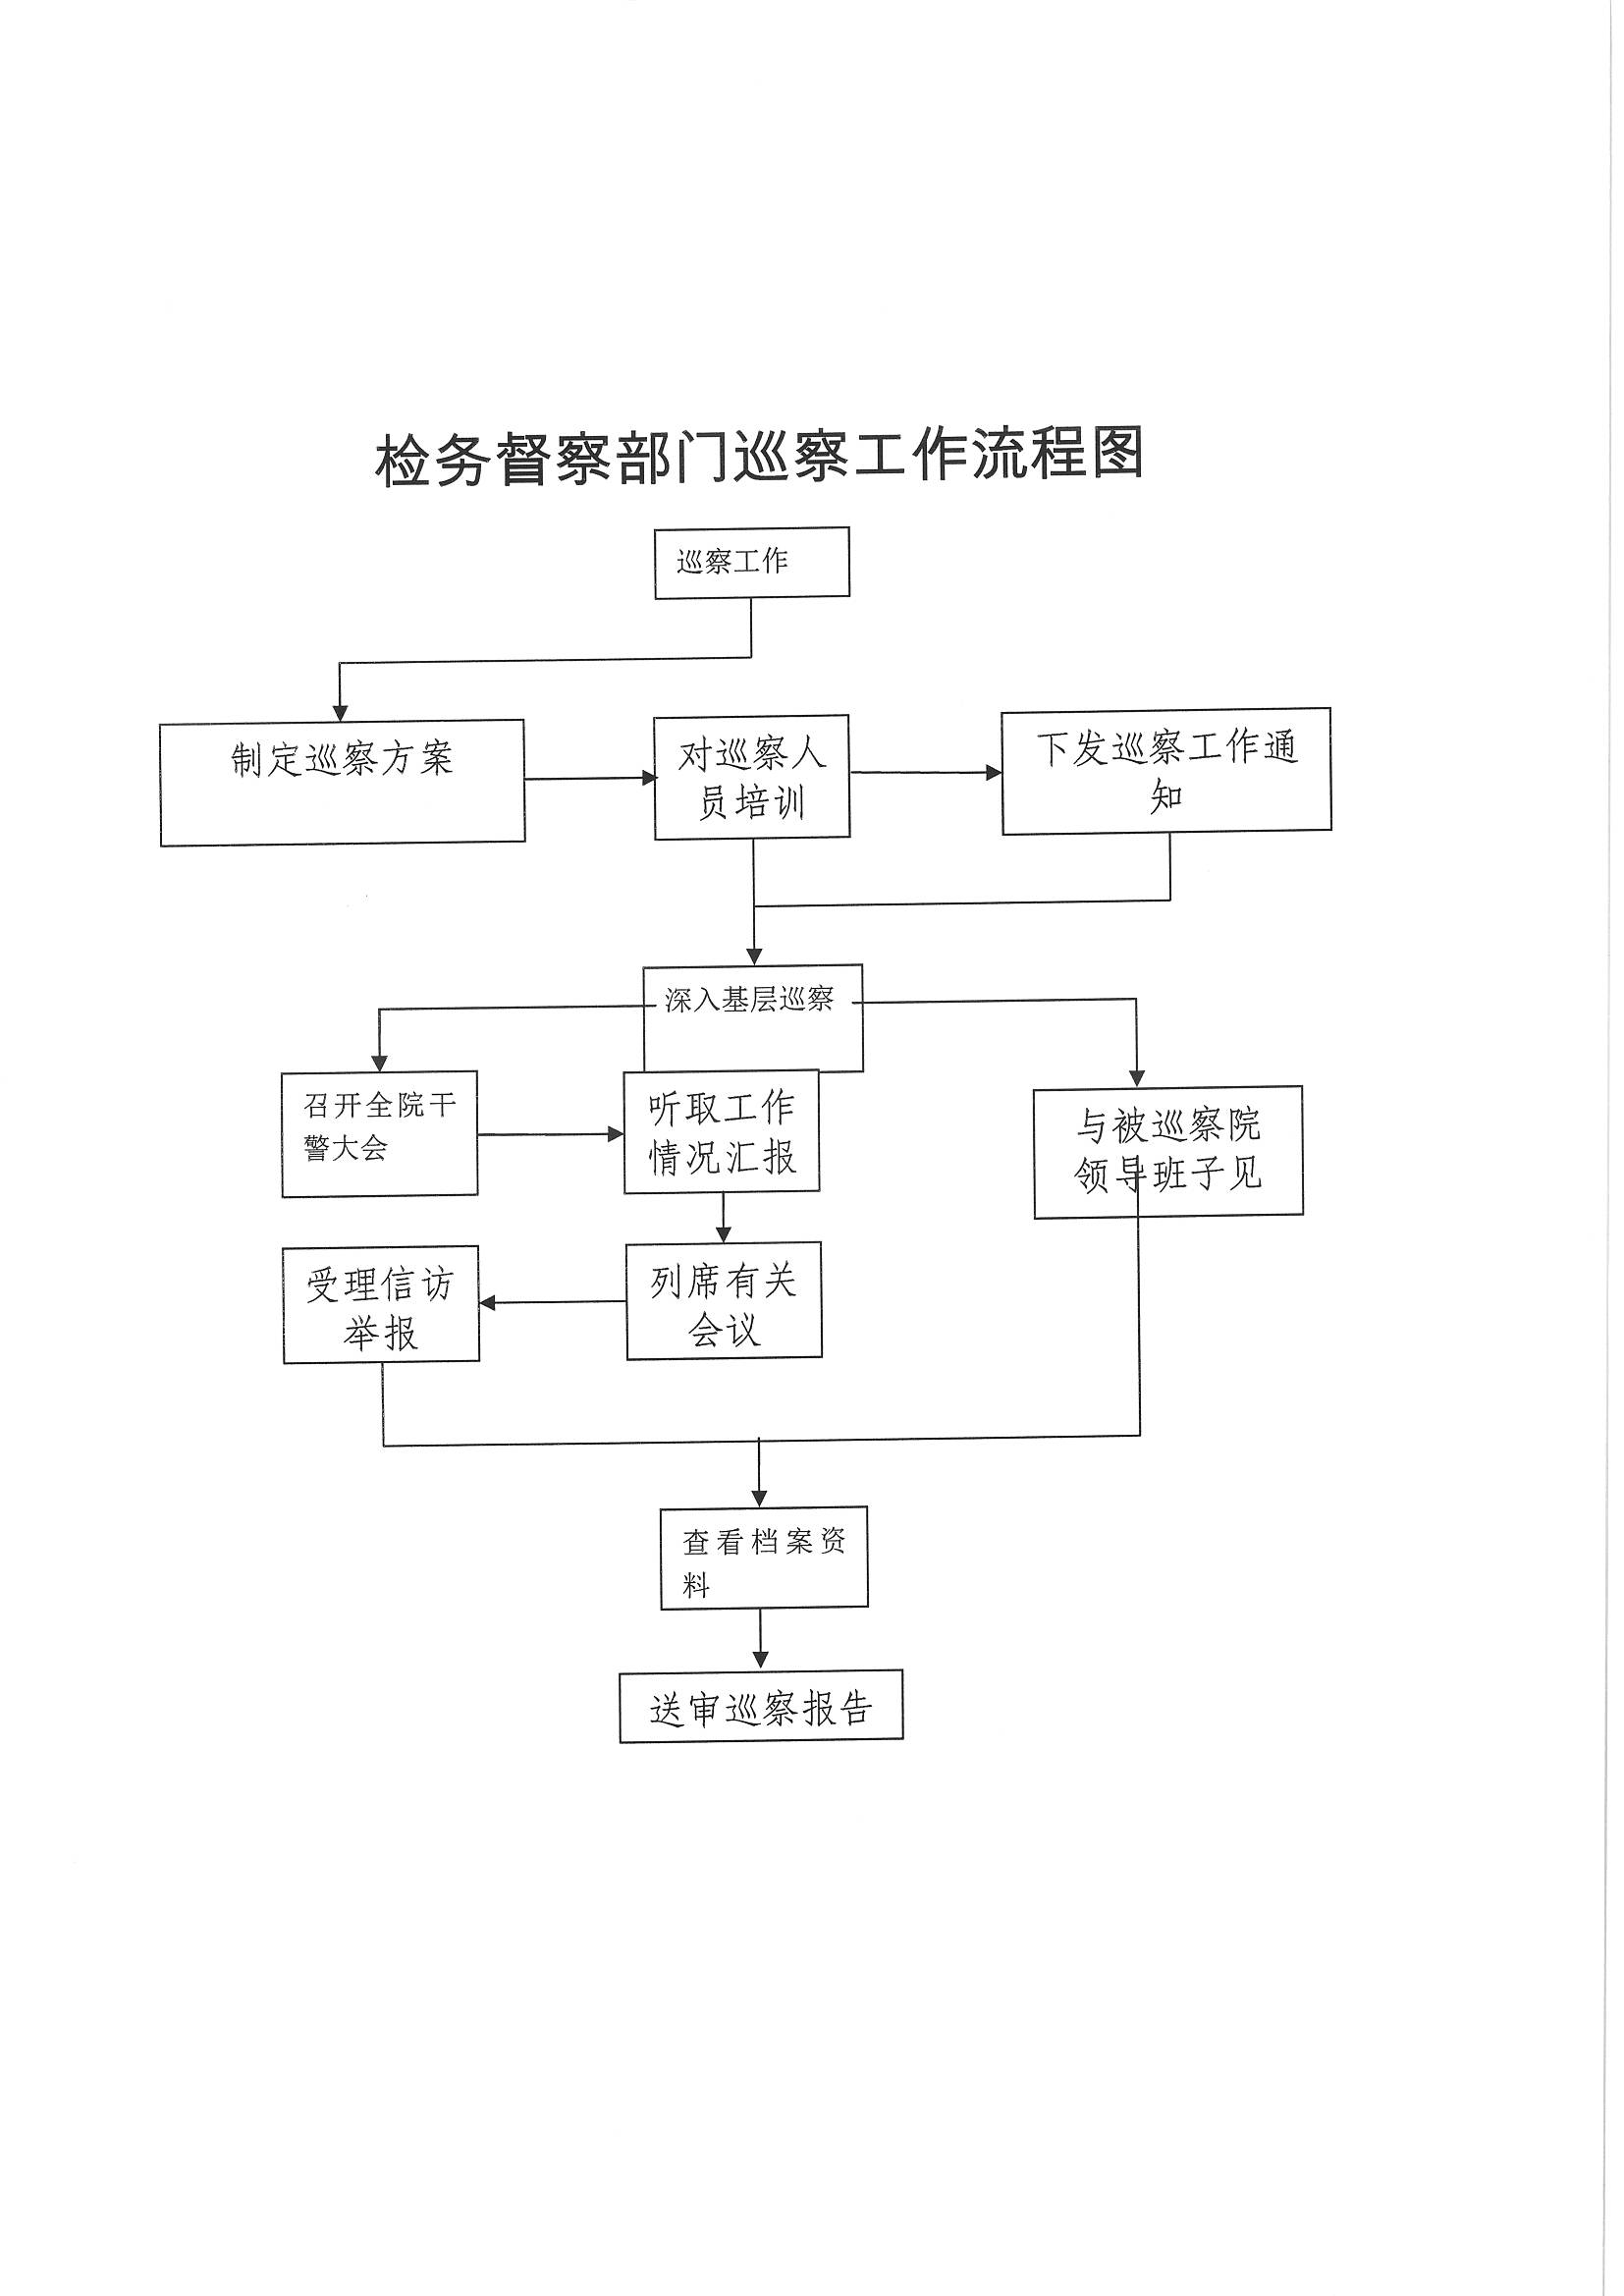 黑龙江省人民检察院农垦分院检务督察部门巡察工作流程图